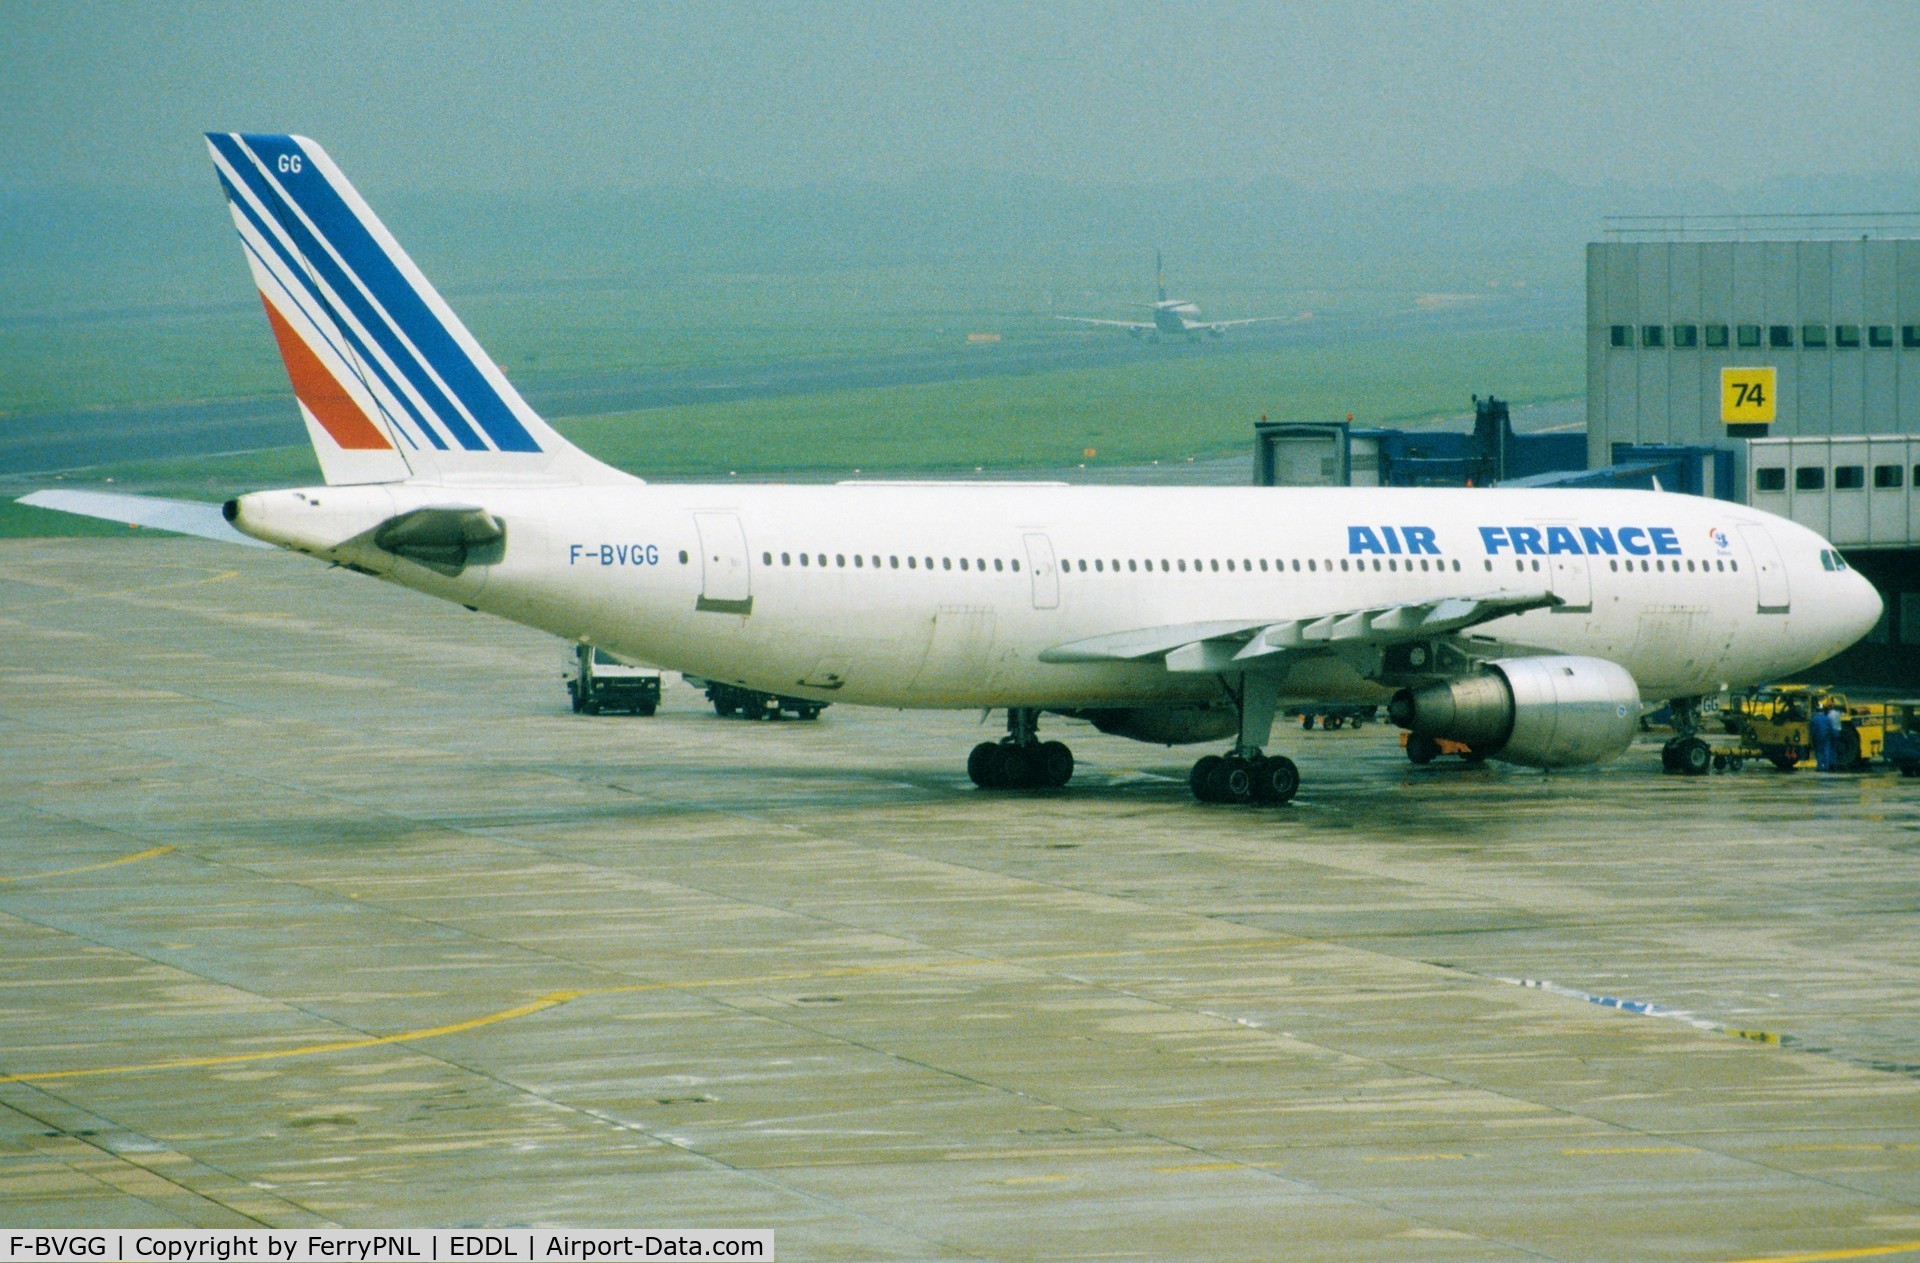 F-BVGG, 1982 Airbus A300B4-203 C/N 019, Air France A300 at its gate